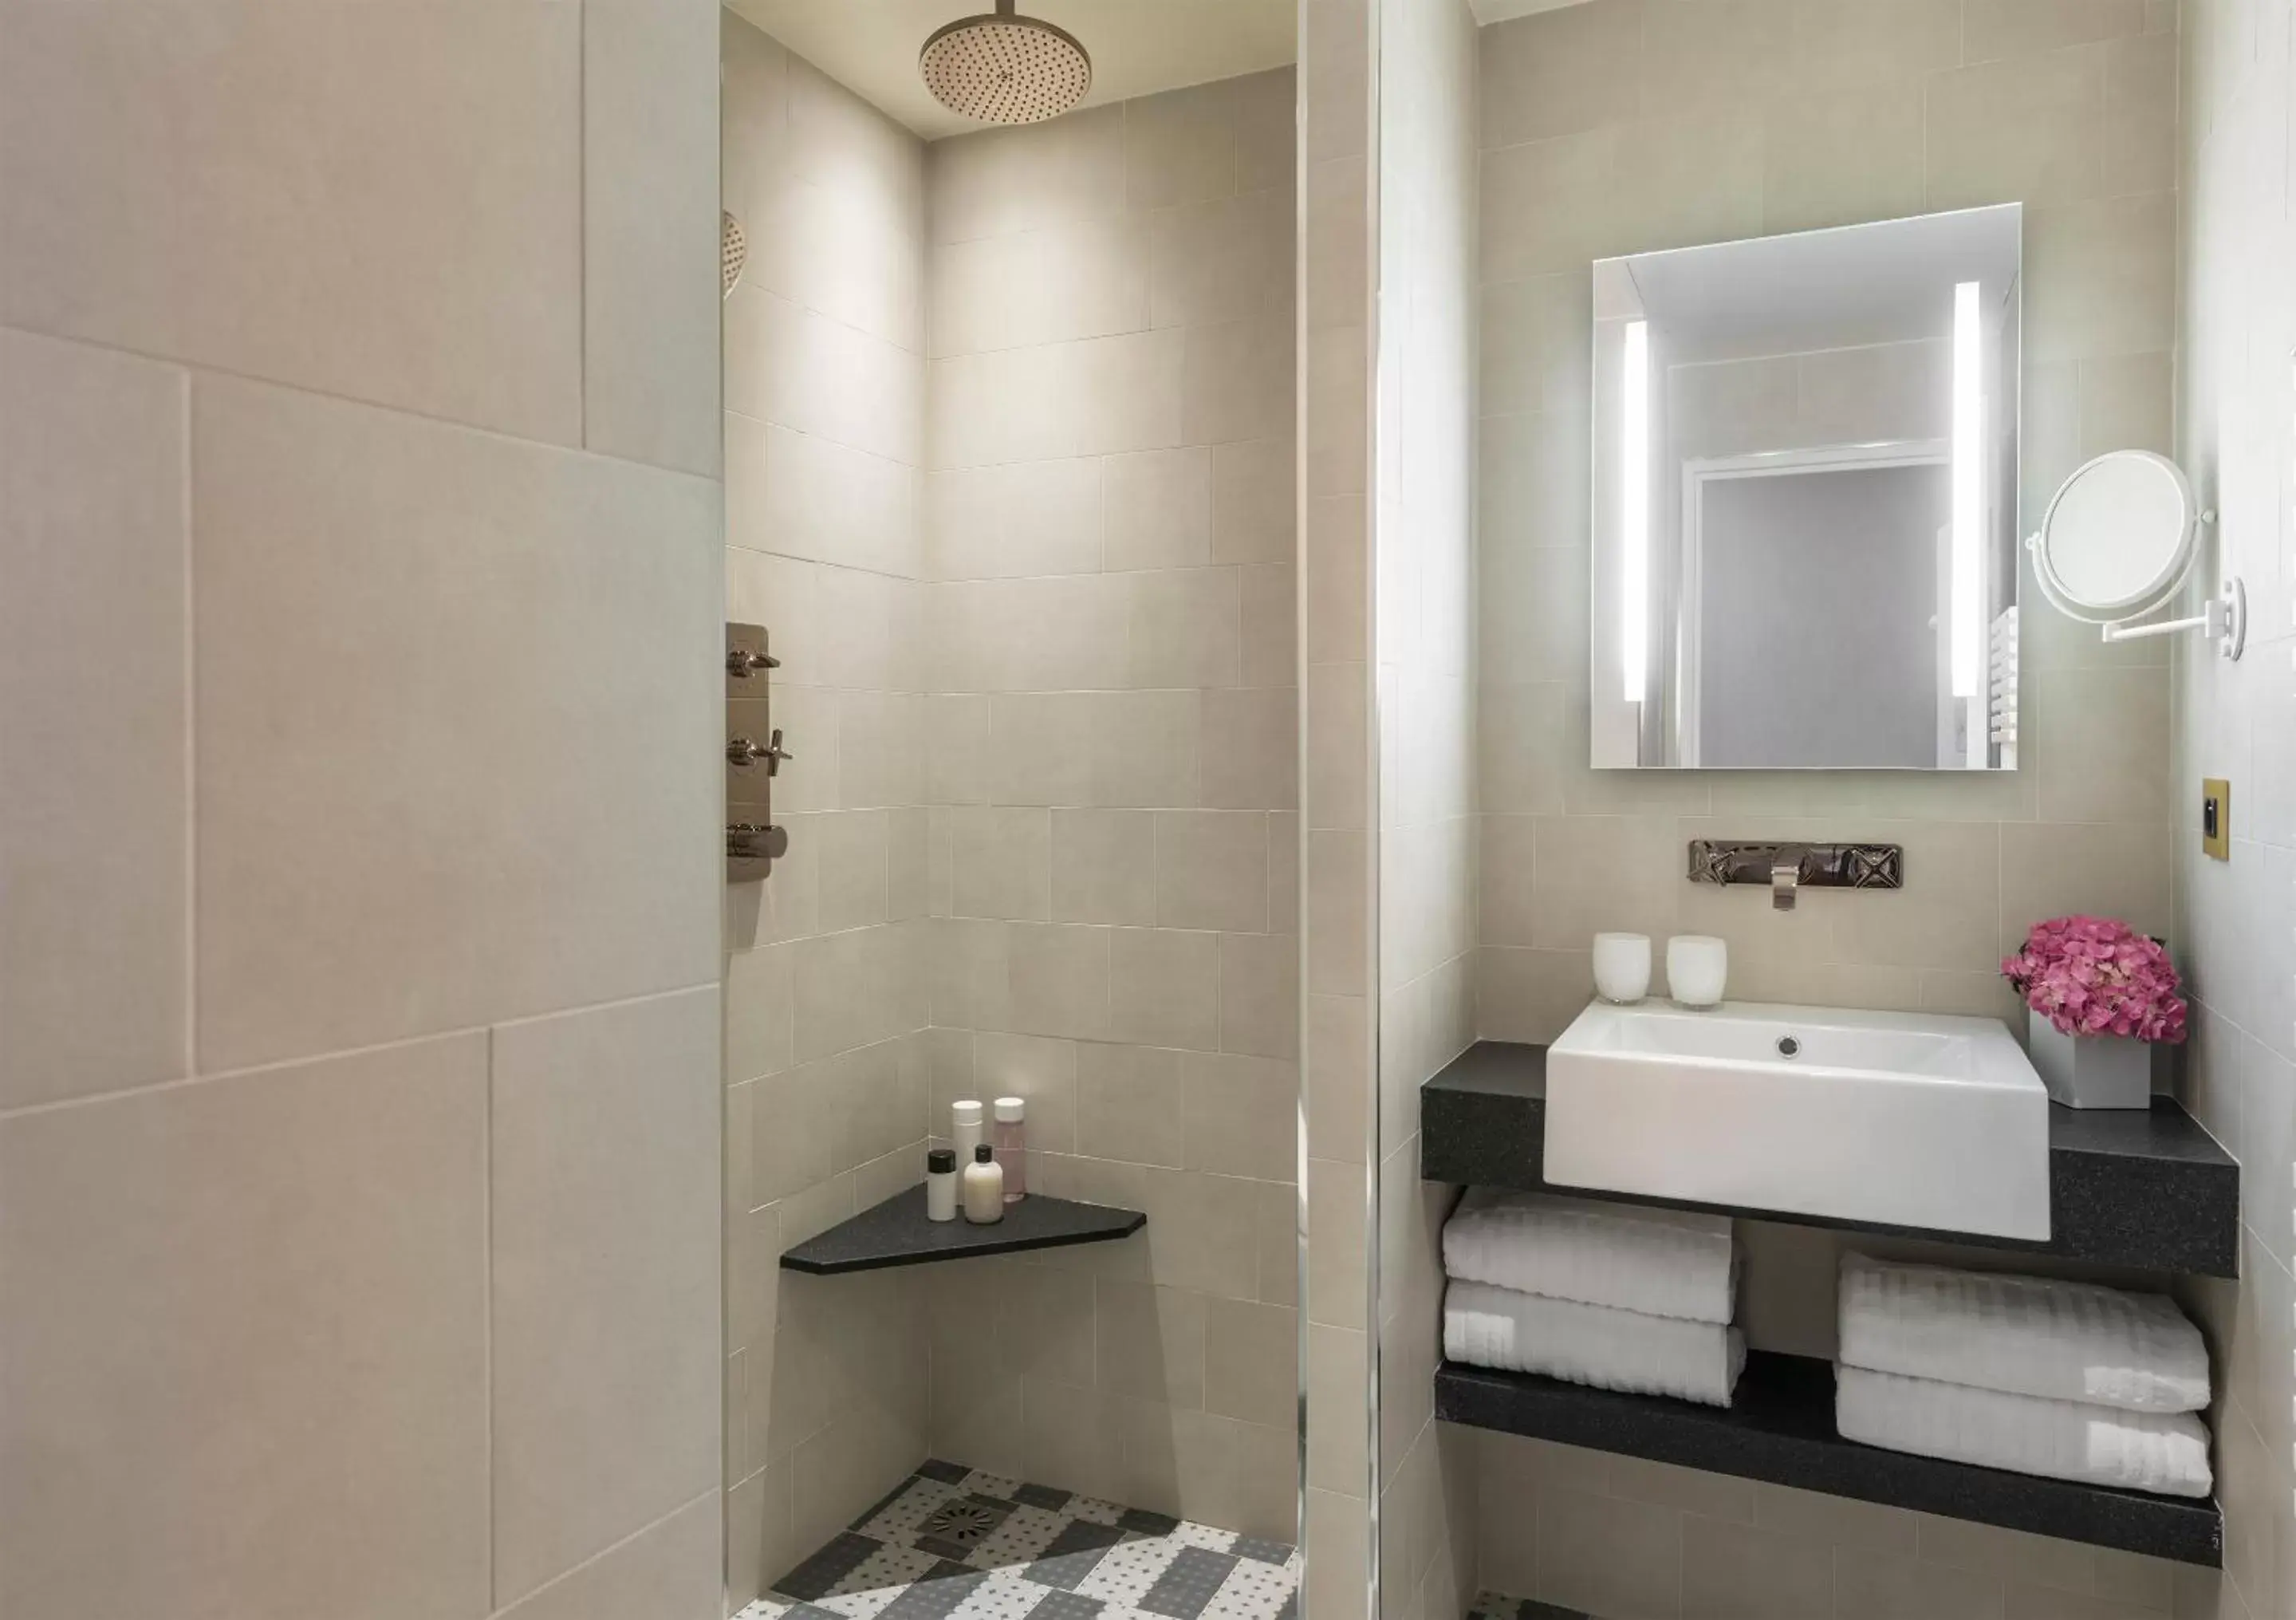 Bathroom in Hotel Ducs de Bourgogne